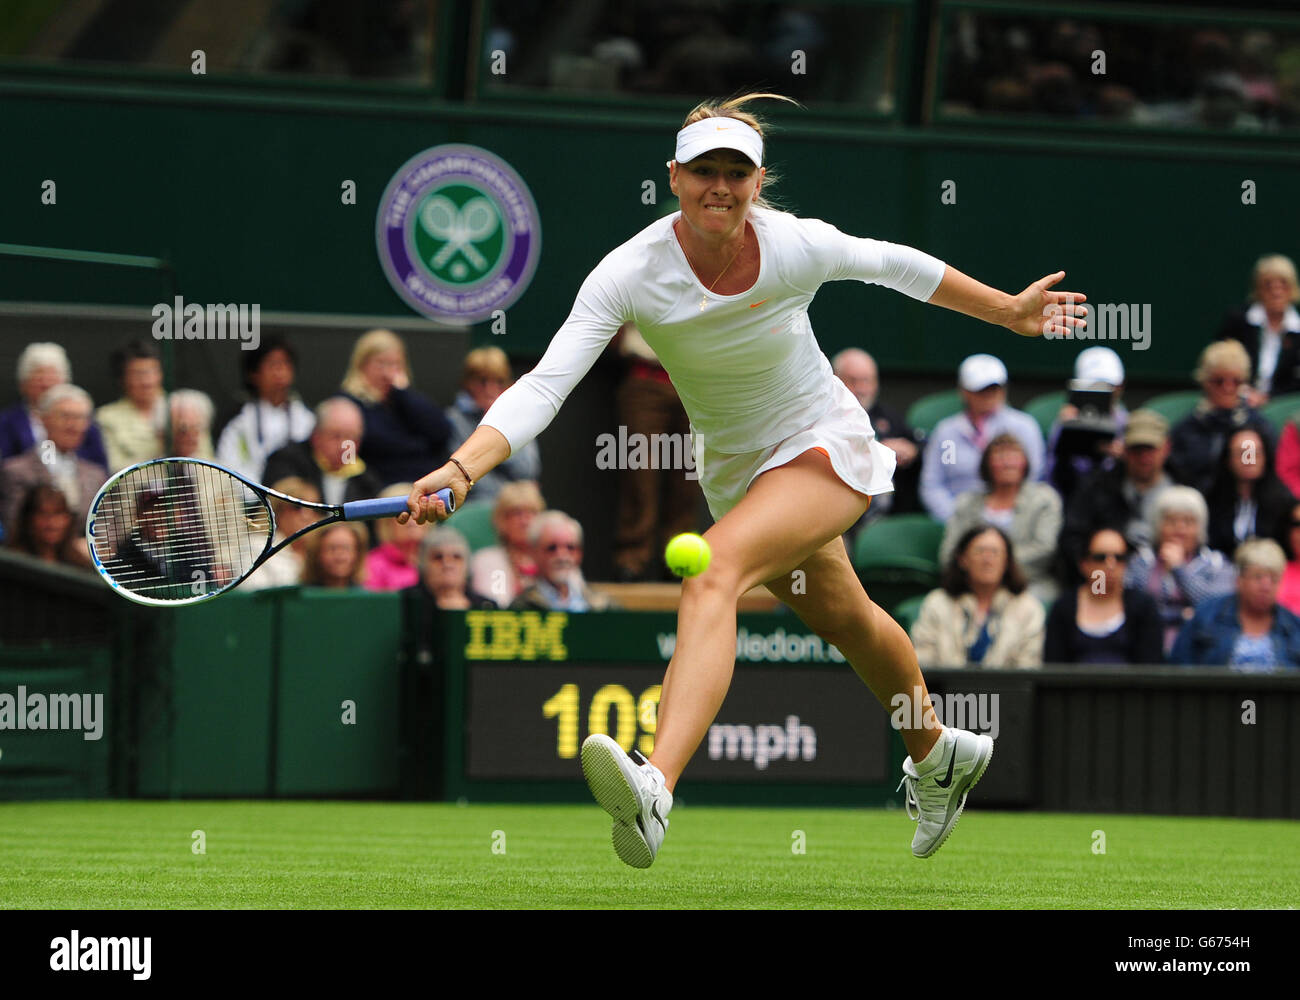 Maria Sharapova en Russie contre Kristina Mladenovic en France lors du premier jour des championnats de Wimbledon au All England Lawn tennis and Croquet Club, Wimbledon. Banque D'Images